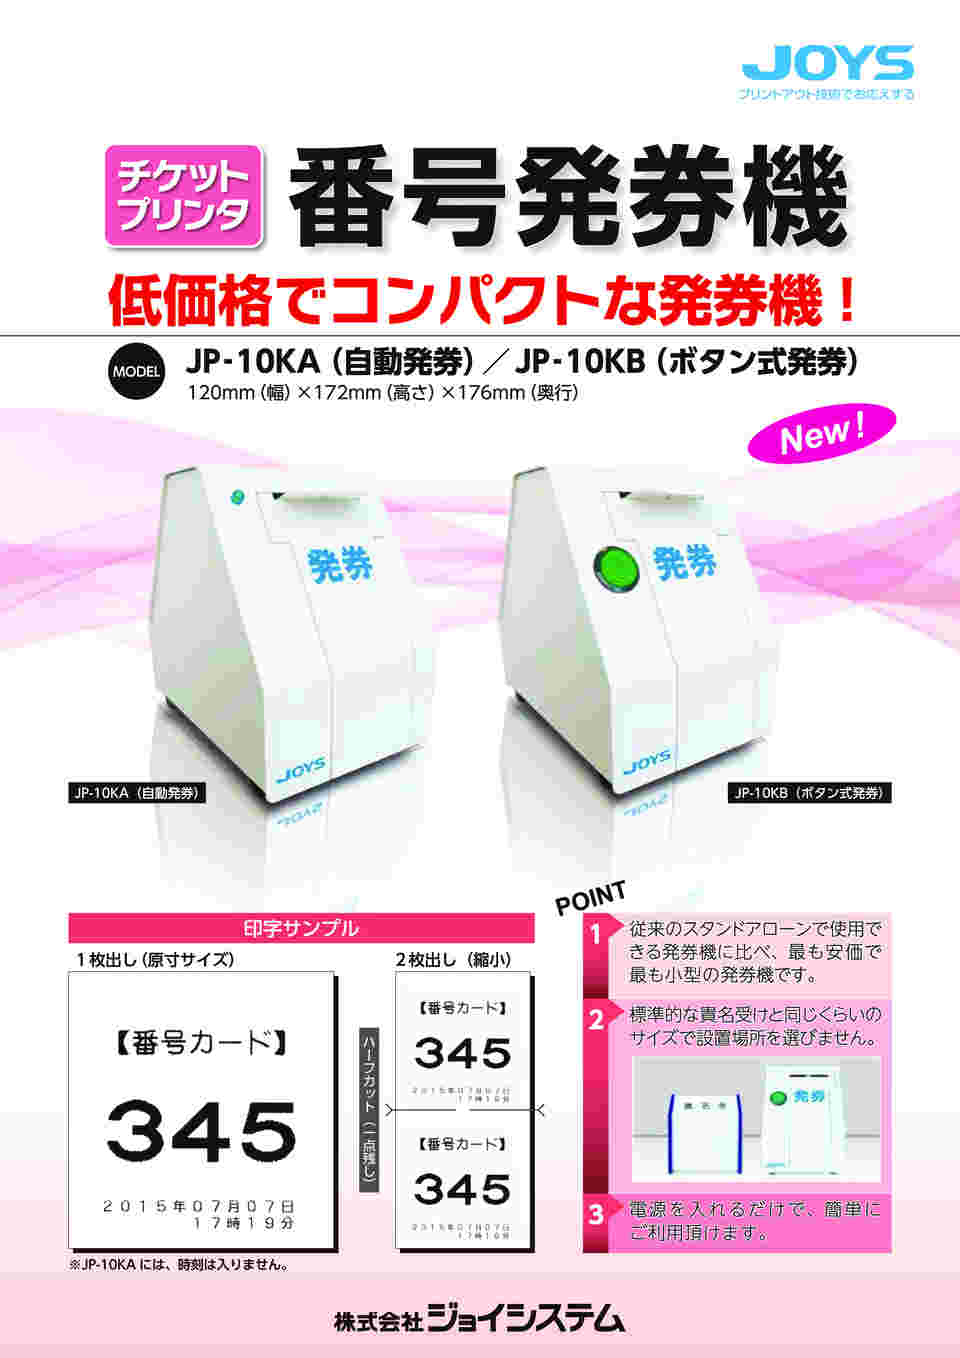 ジョイシステム 番号発券機 JP-10KA JP-10KB JP-10KS 対応 汎用感熱